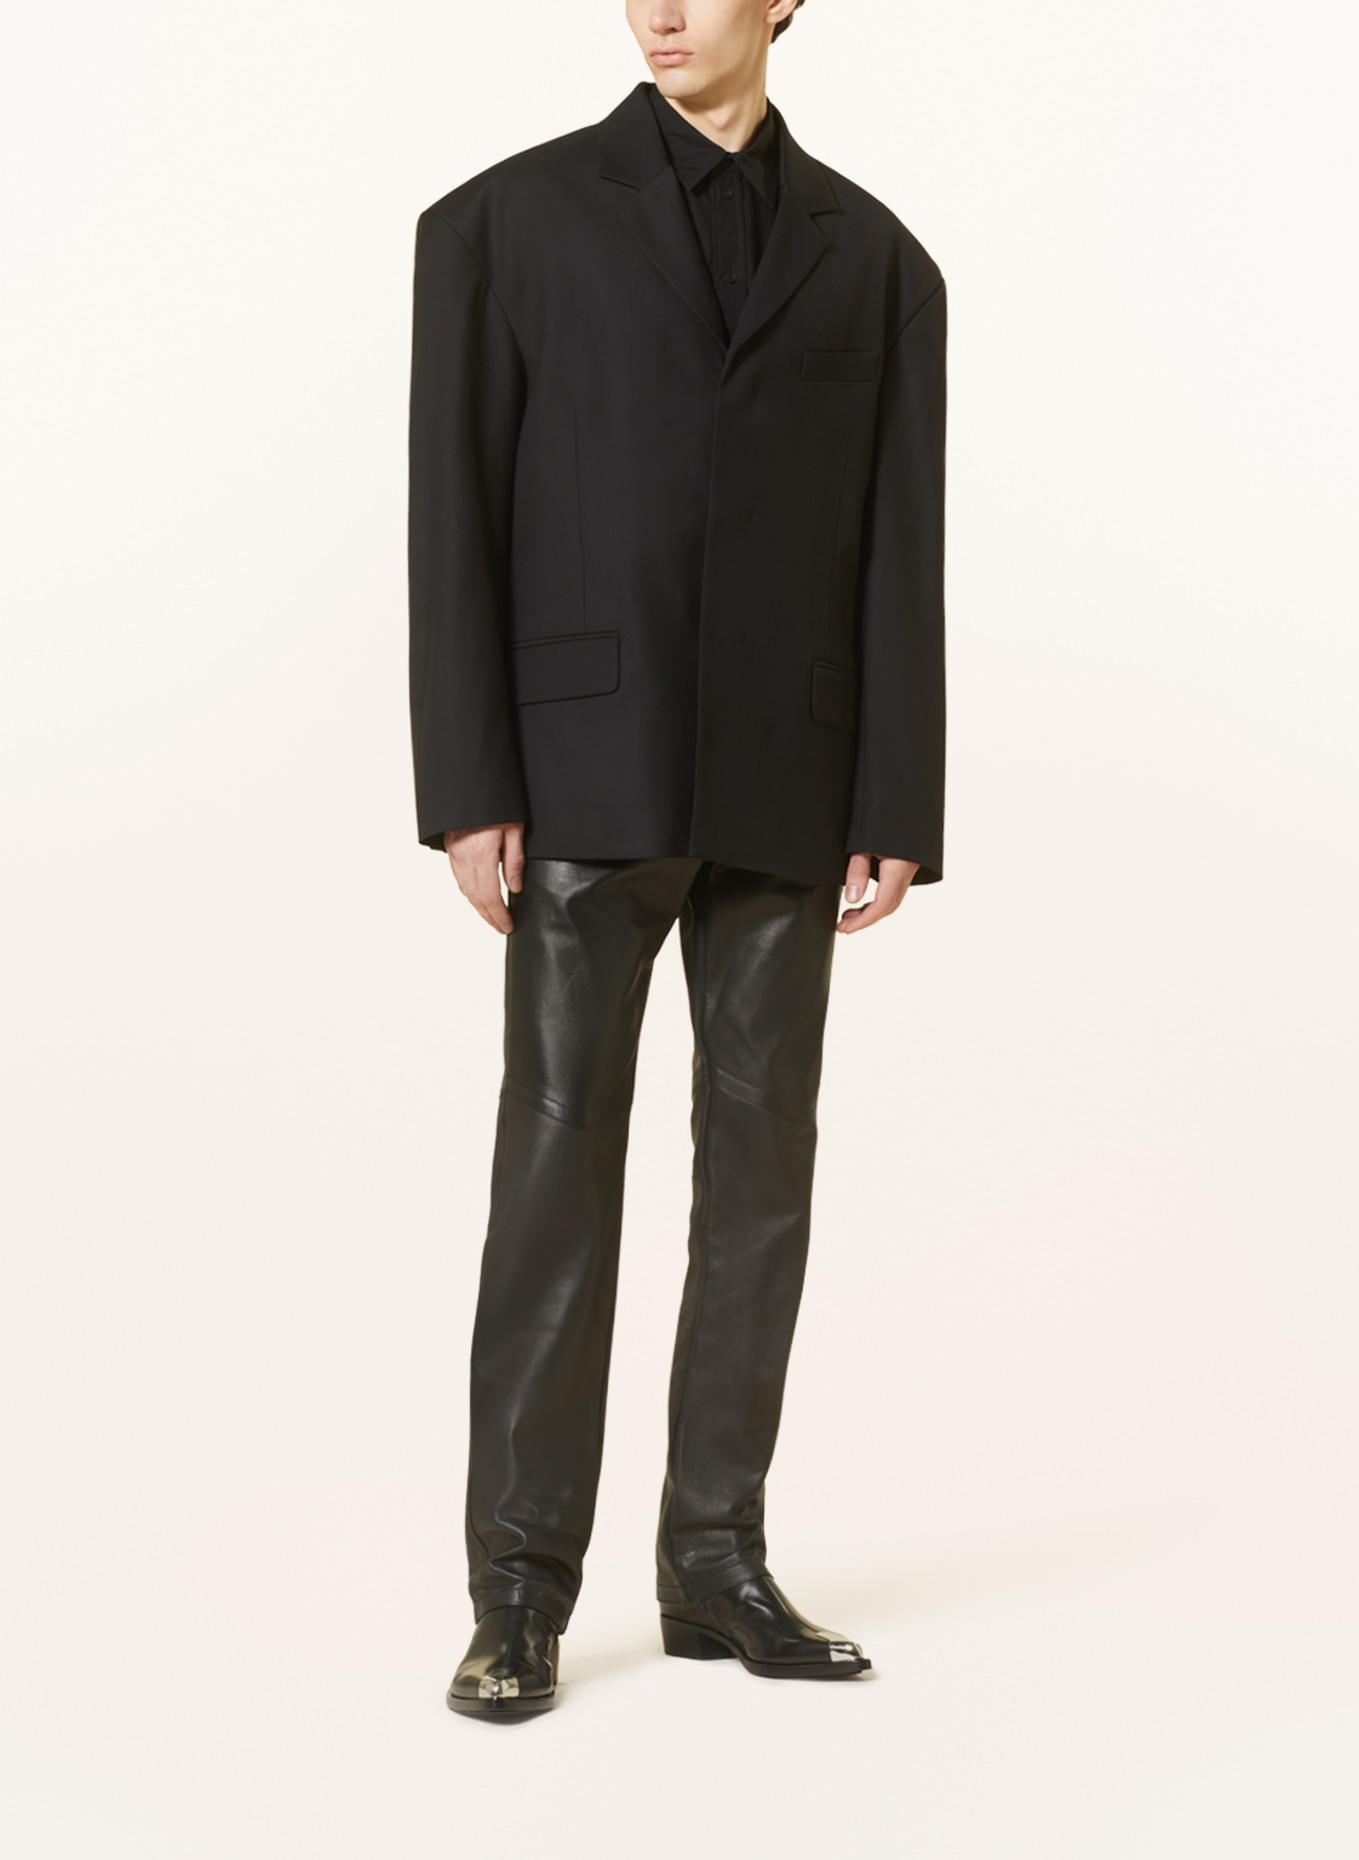 032c Tailored jacket ORION regular fit, Color: BLACK (Image 2)